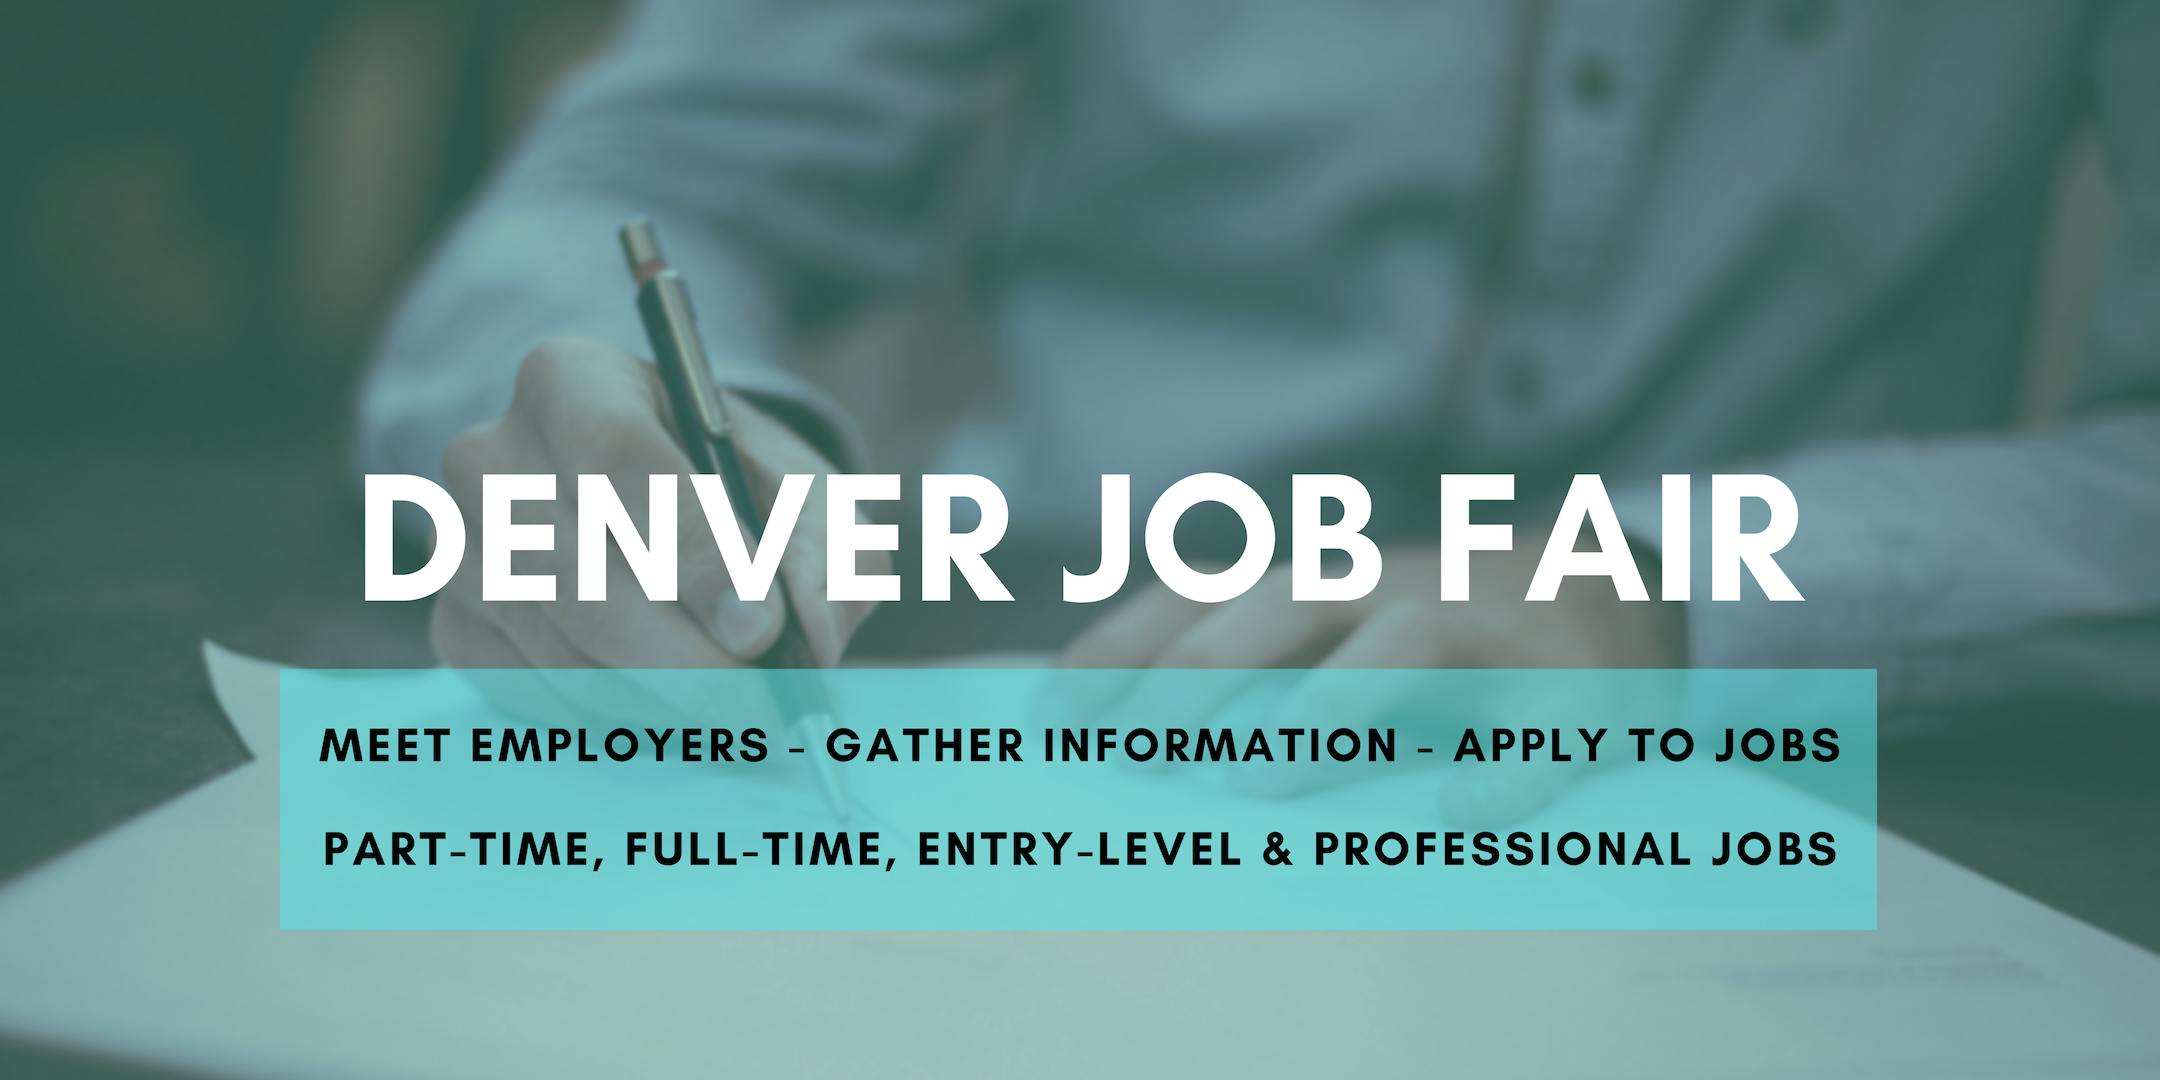 Denver Job Fair - August 26, 2019 Job Fairs & Hiring Events in Denver CO